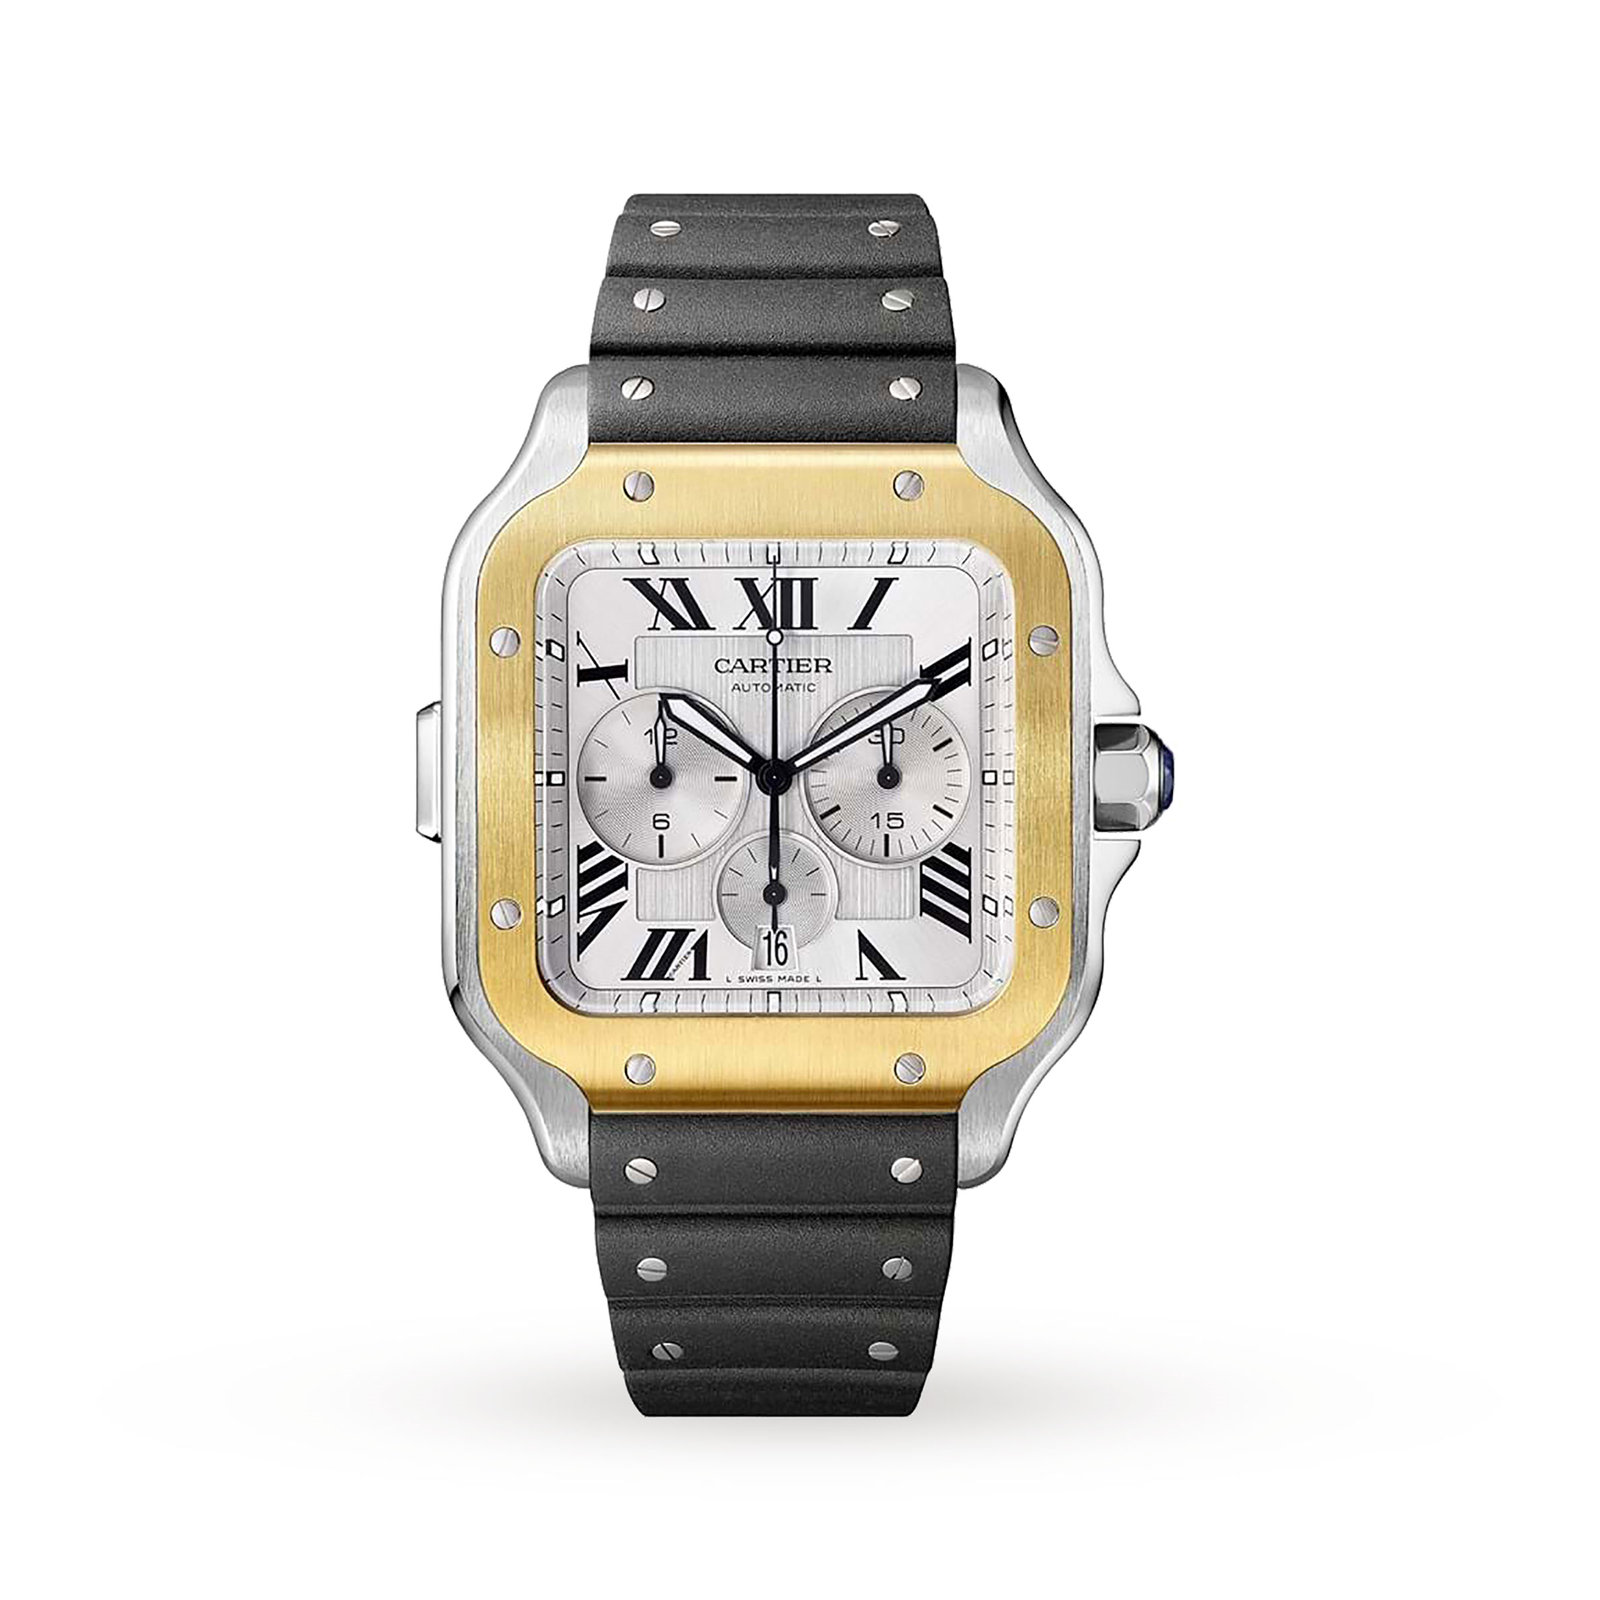 Santos de Cartier Chronograph watch, XL model, chronograph, gold and ...